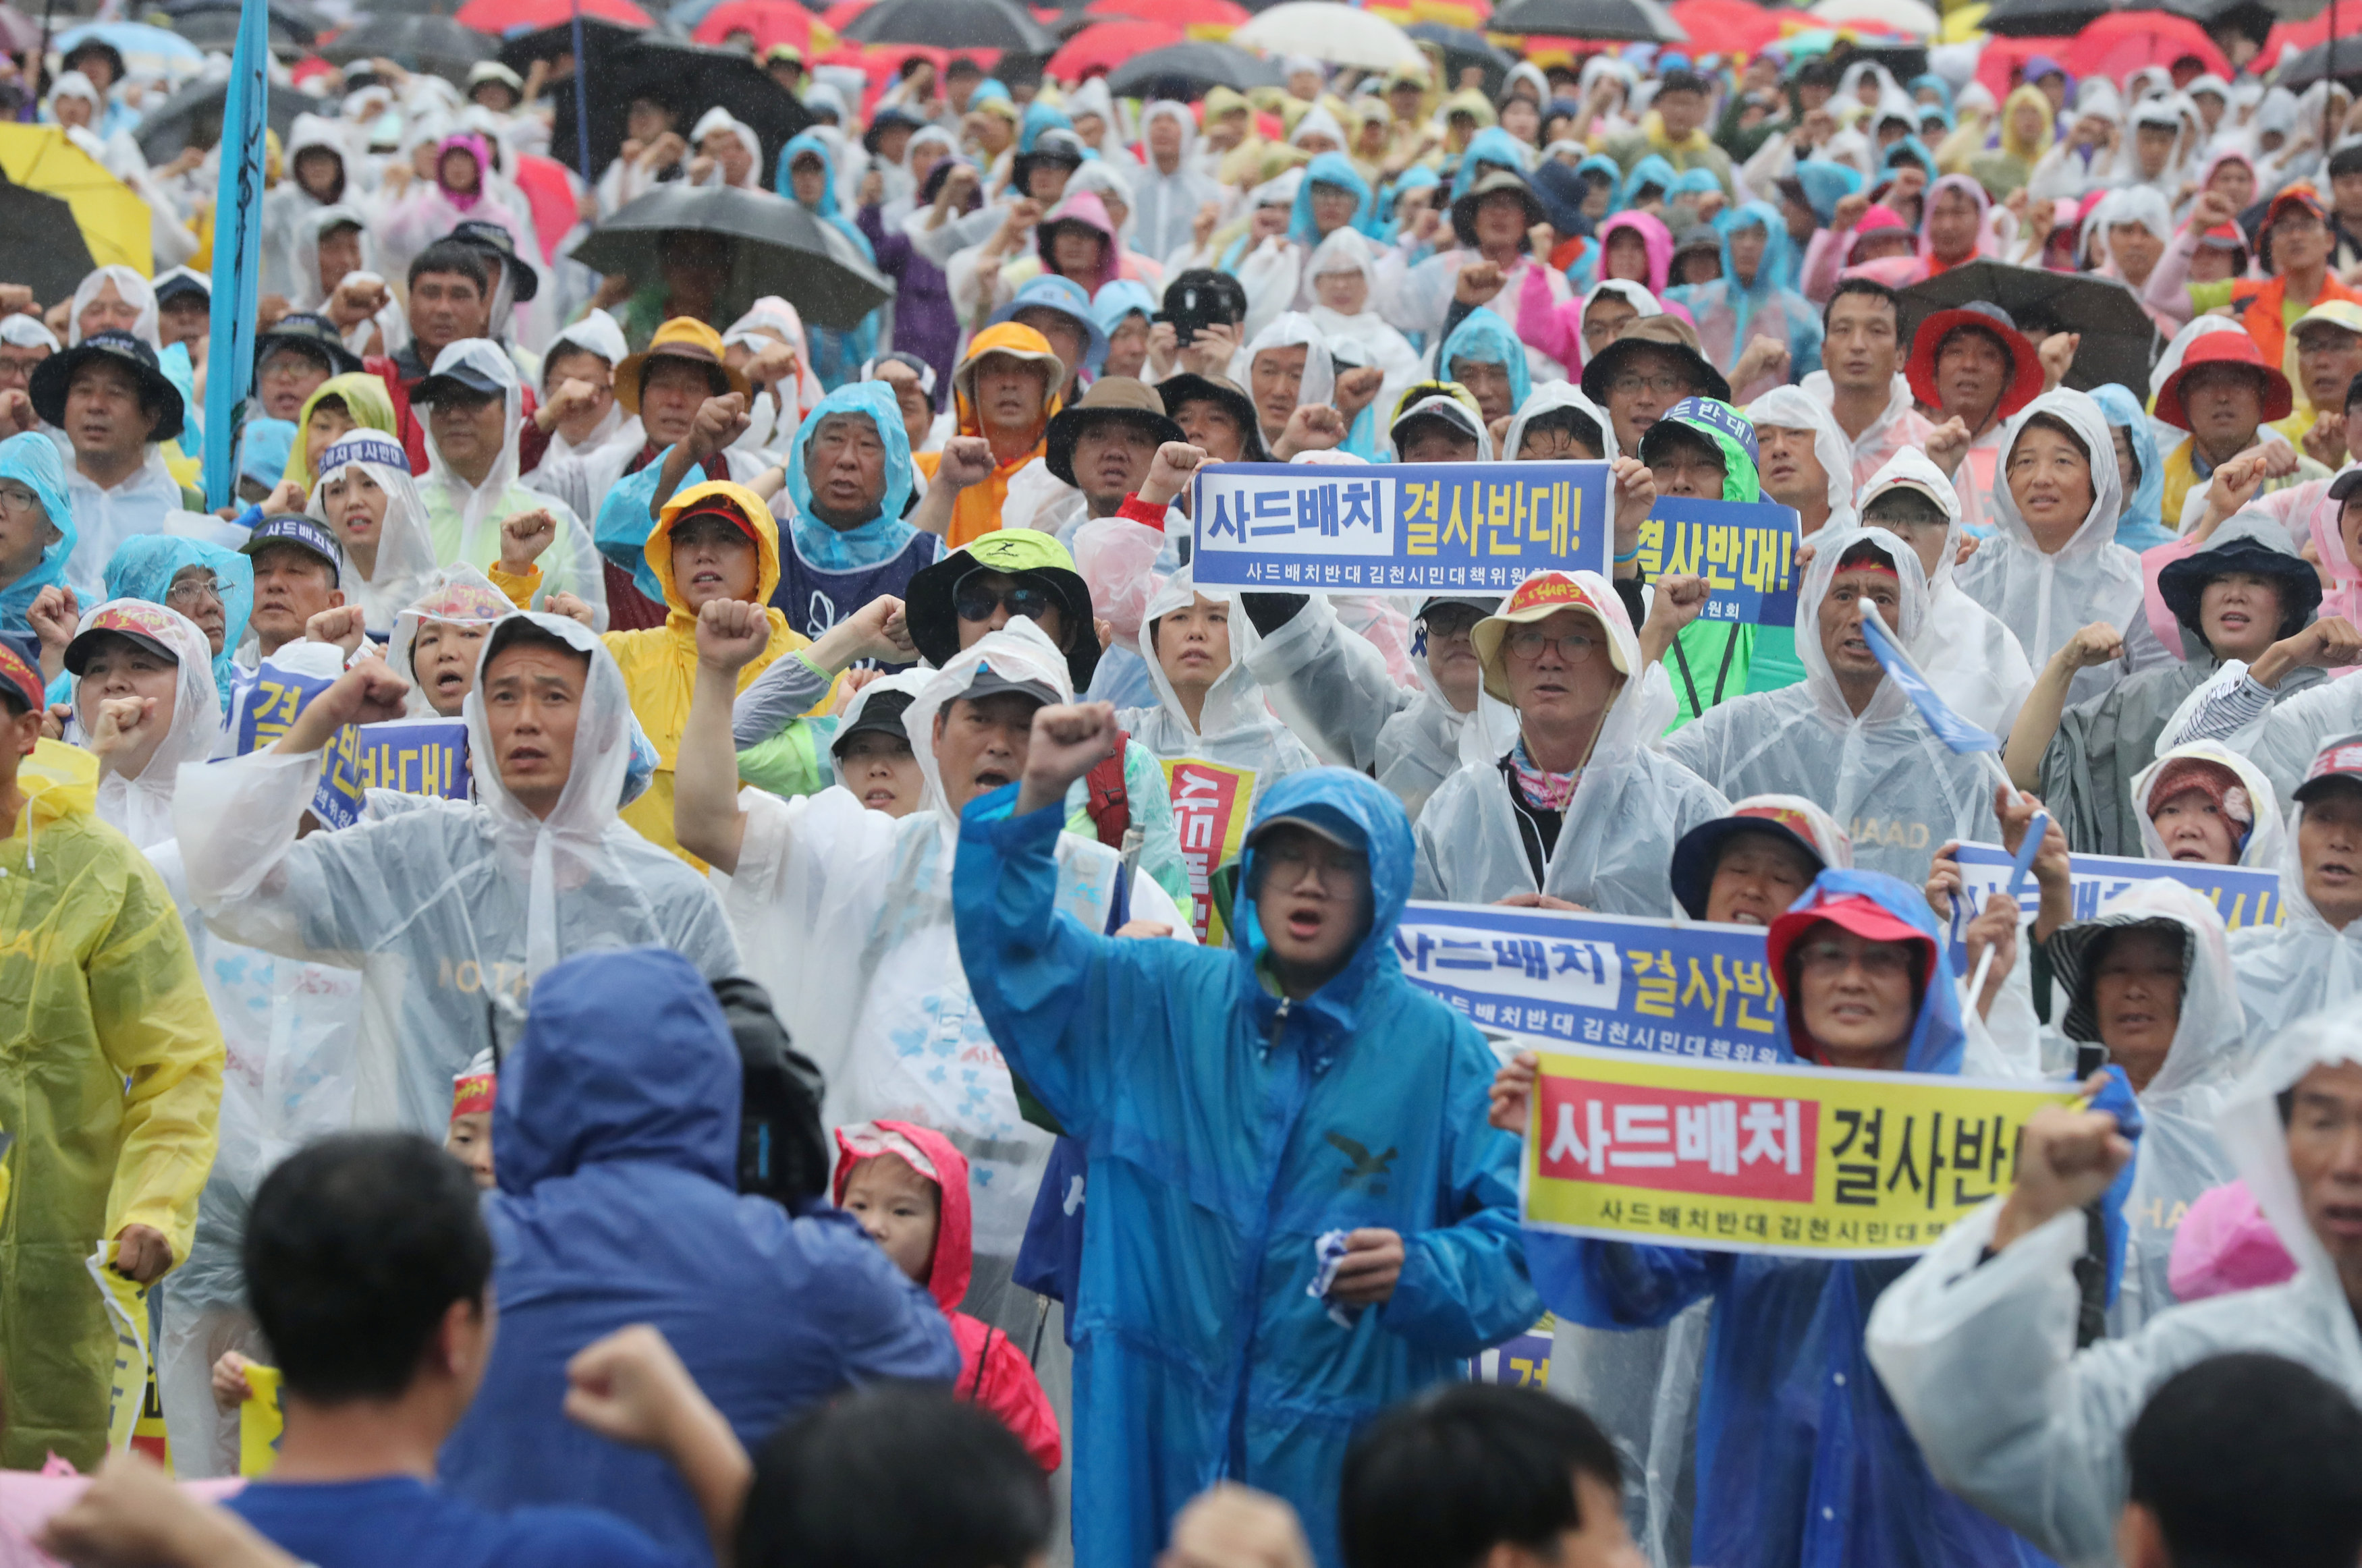 مظاهرات مطالبة بالسلام فى شبه الجزيرة الكورية